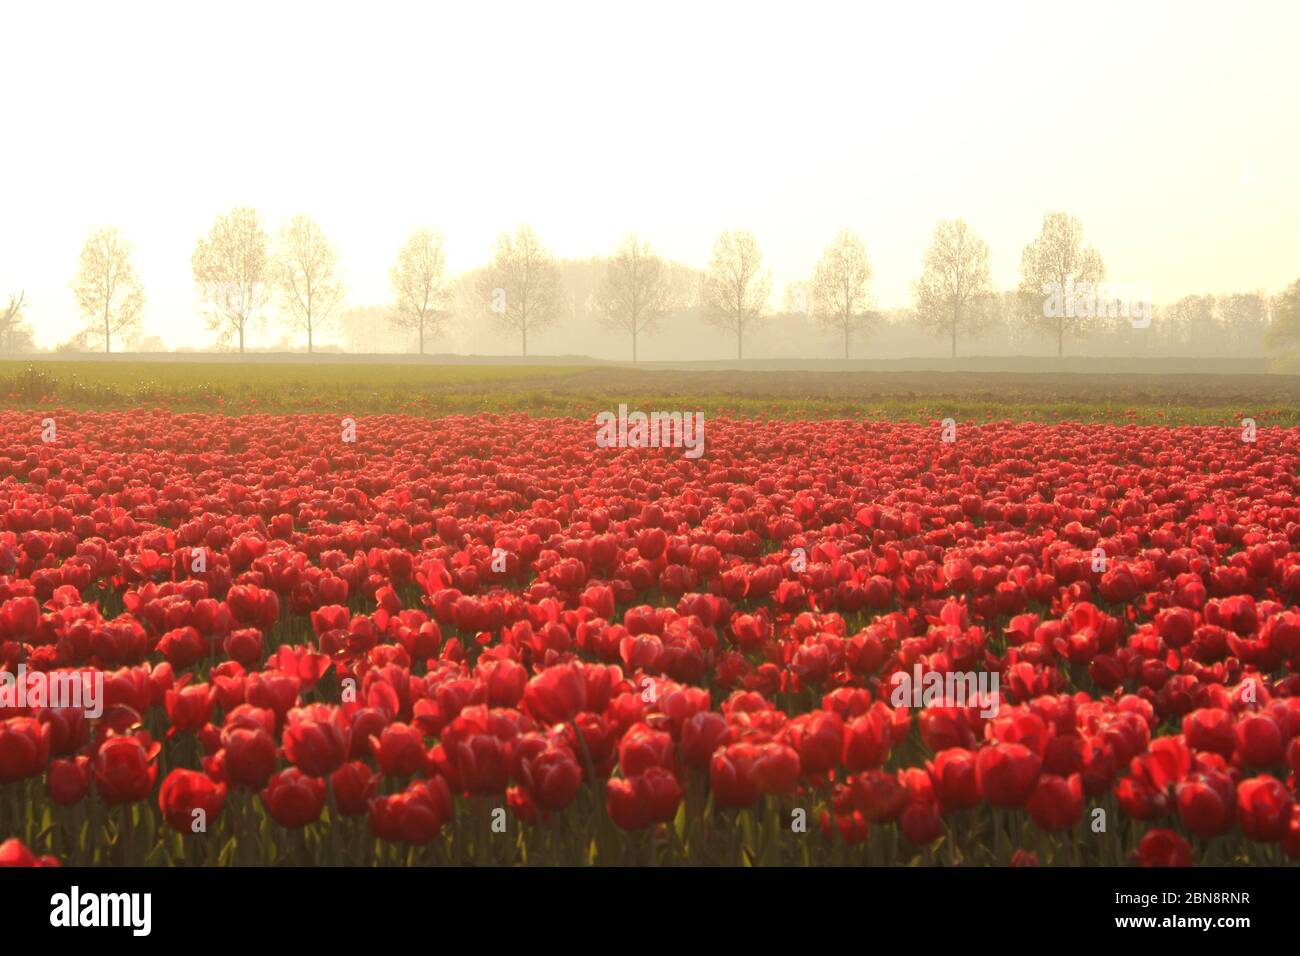 un magnifique paysage hollandais avec un grand champ de bulbes avec des tulipes rouges et une rangée d'arbres et de brouillard dans le fond en soirée au printemps Banque D'Images